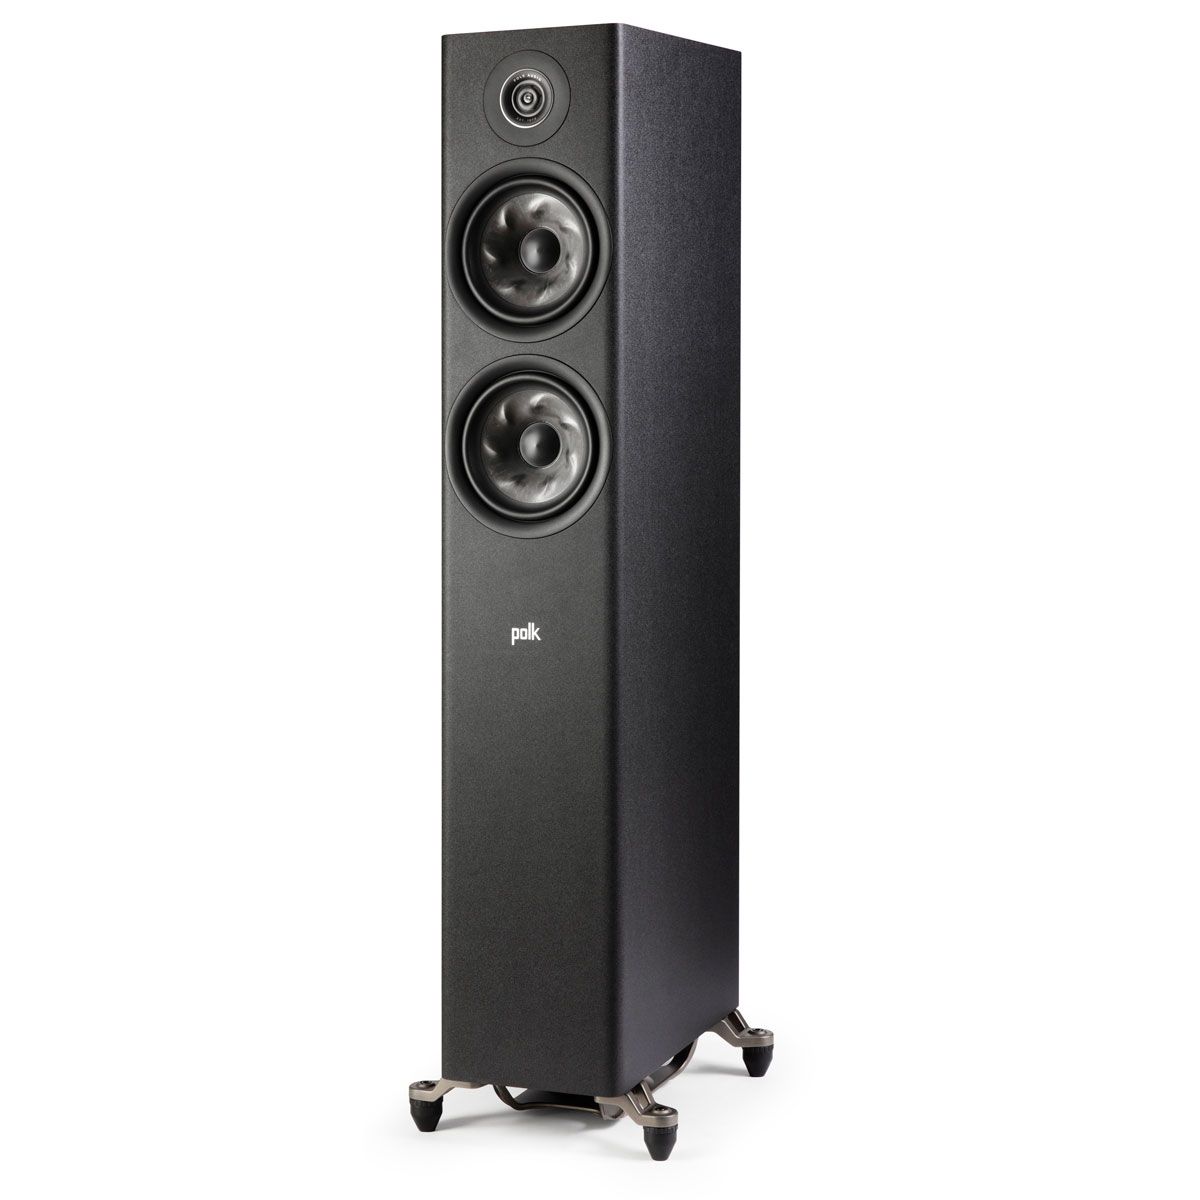 Polk Audio Reserve R600 Floorstanding Speaker, Black, front left angle